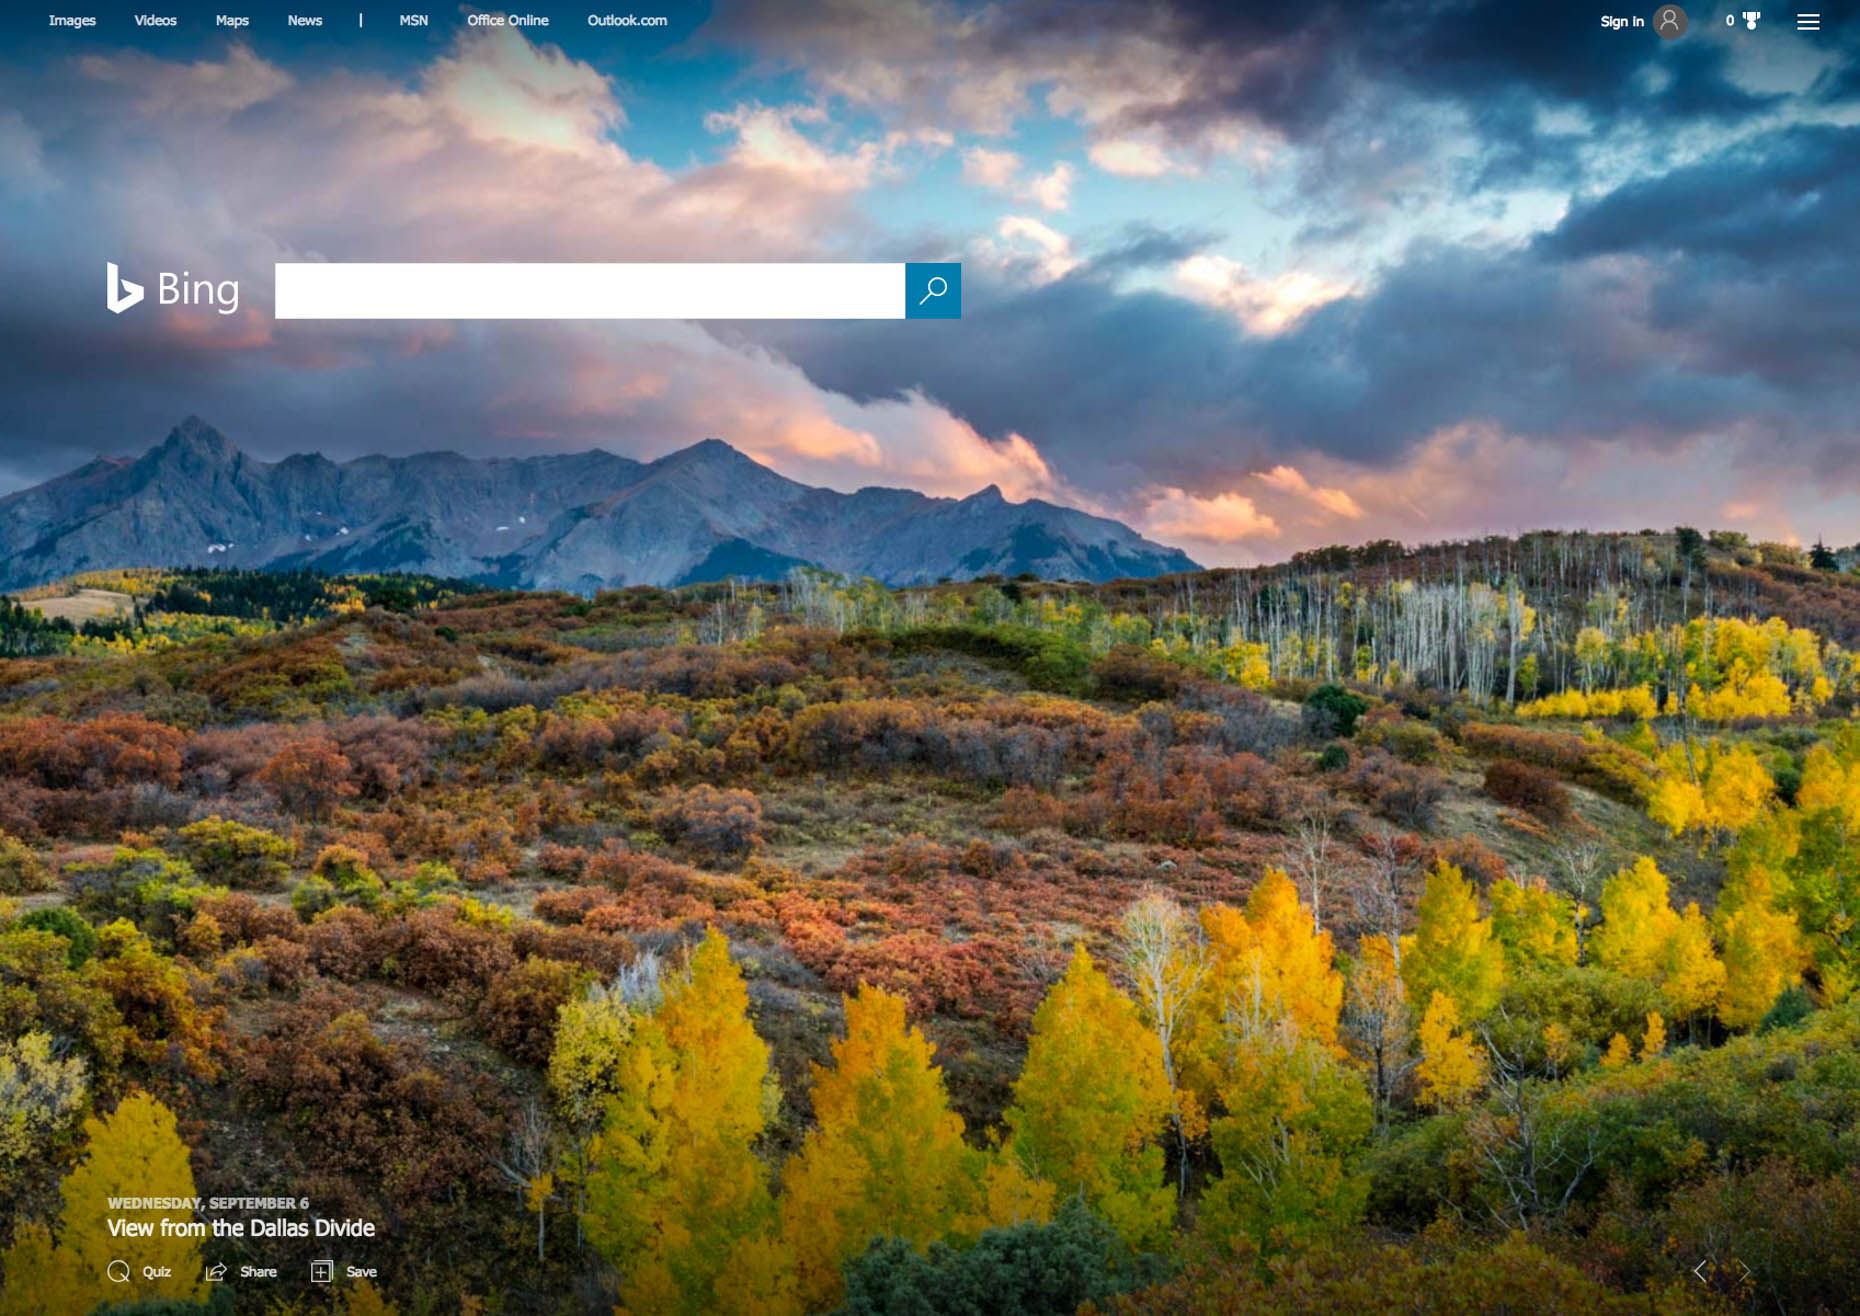 Microsoft - Bing Homepage - Dallas Divide, Colorado